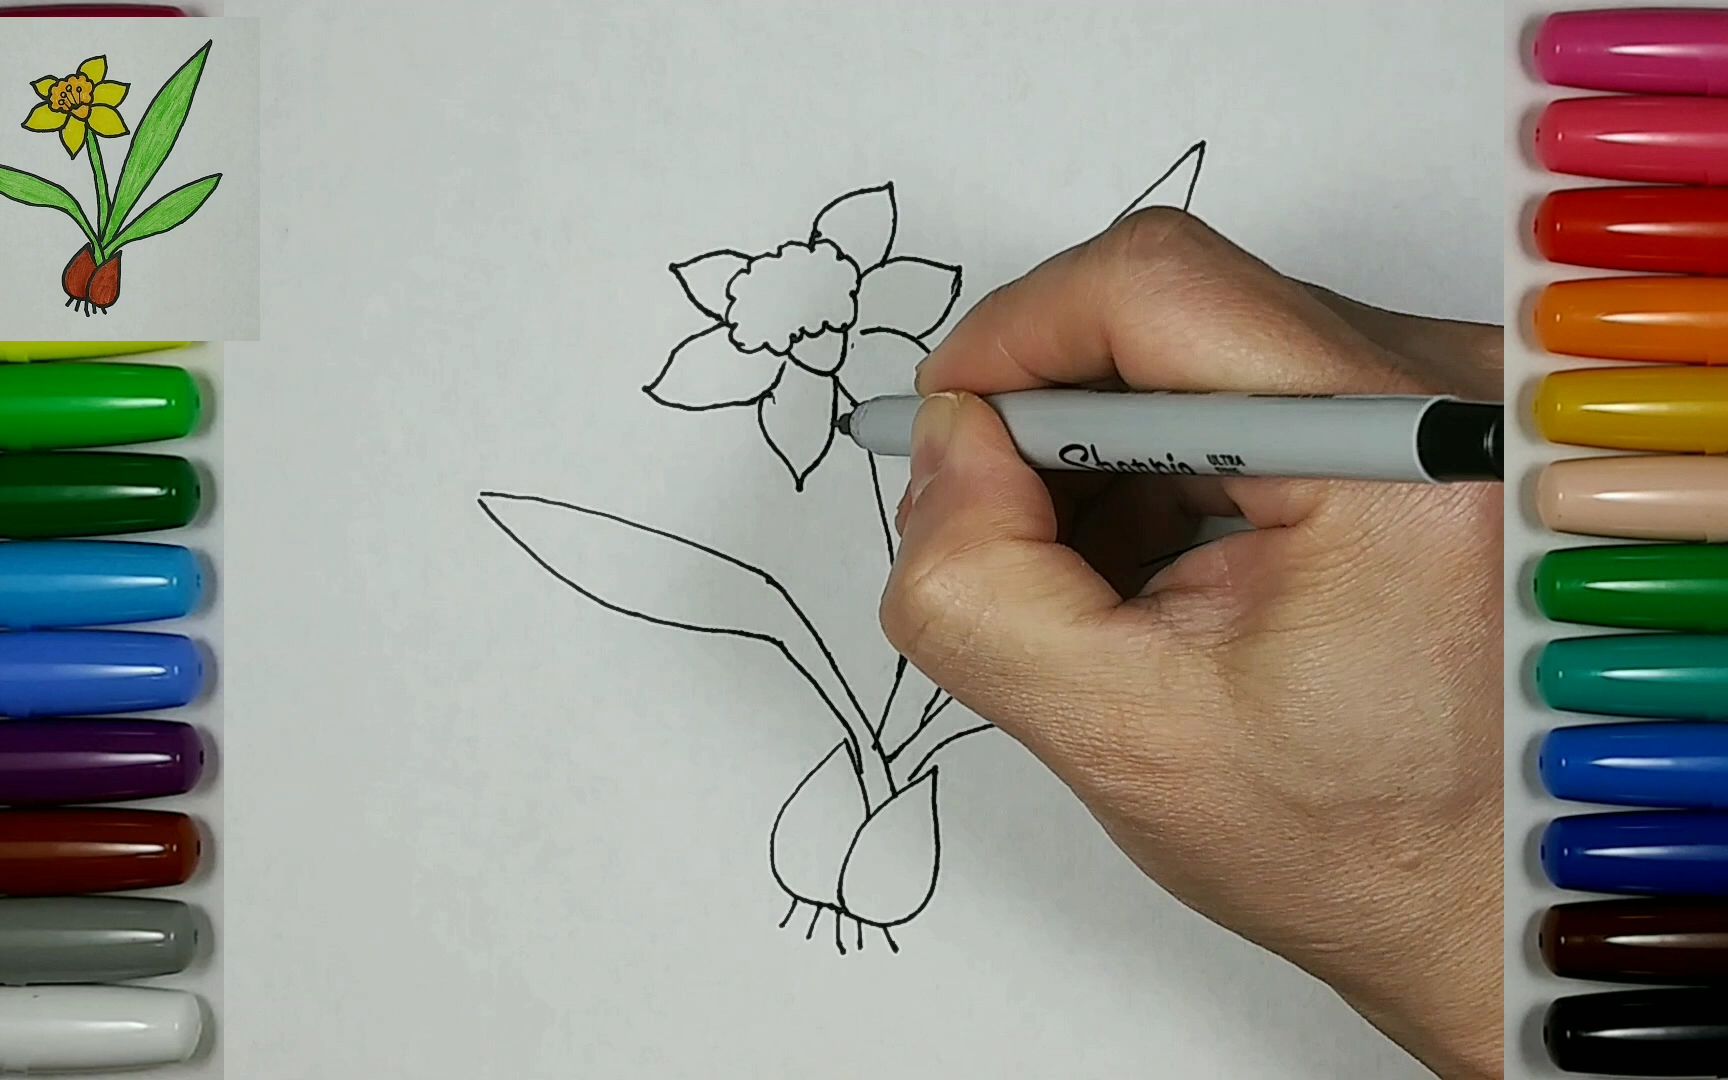 水仙简笔画种花图片